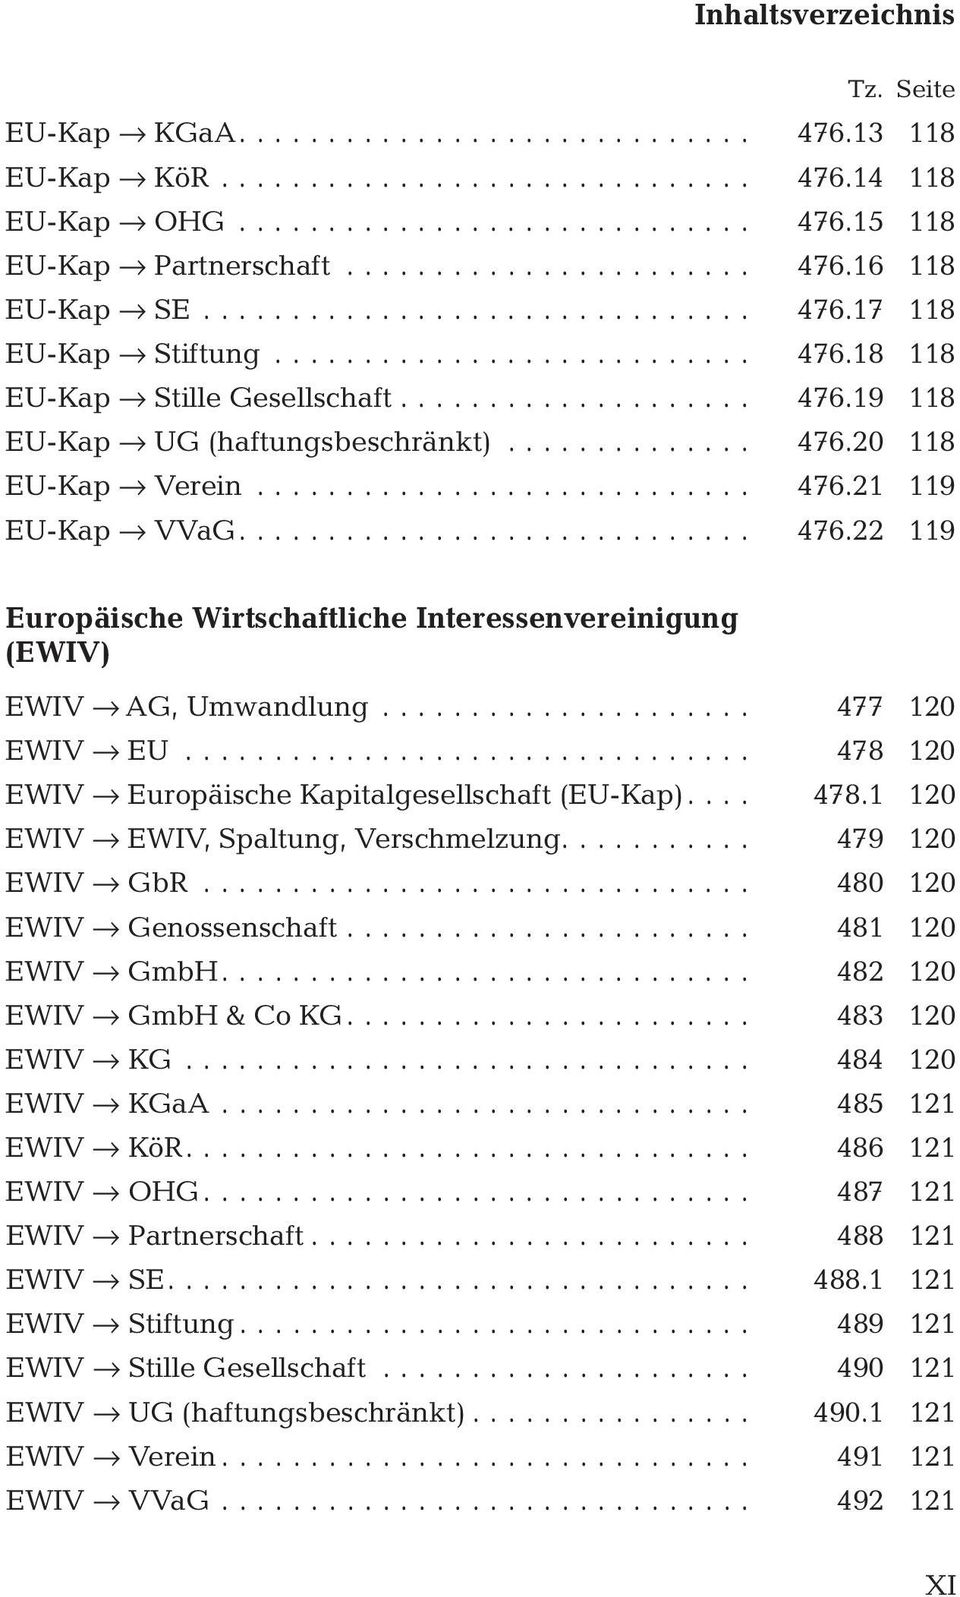 .. 477 120 EWIV fi EU... 478 120 EWIV fi Europäische Kapitalgesellschaft (EU-Kap).... 478.1 120 EWIV fi EWIV, Spaltung, Verschmelzung.... 479 120 EWIV fi GbR... 480 120 EWIV fi Genossenschaft.